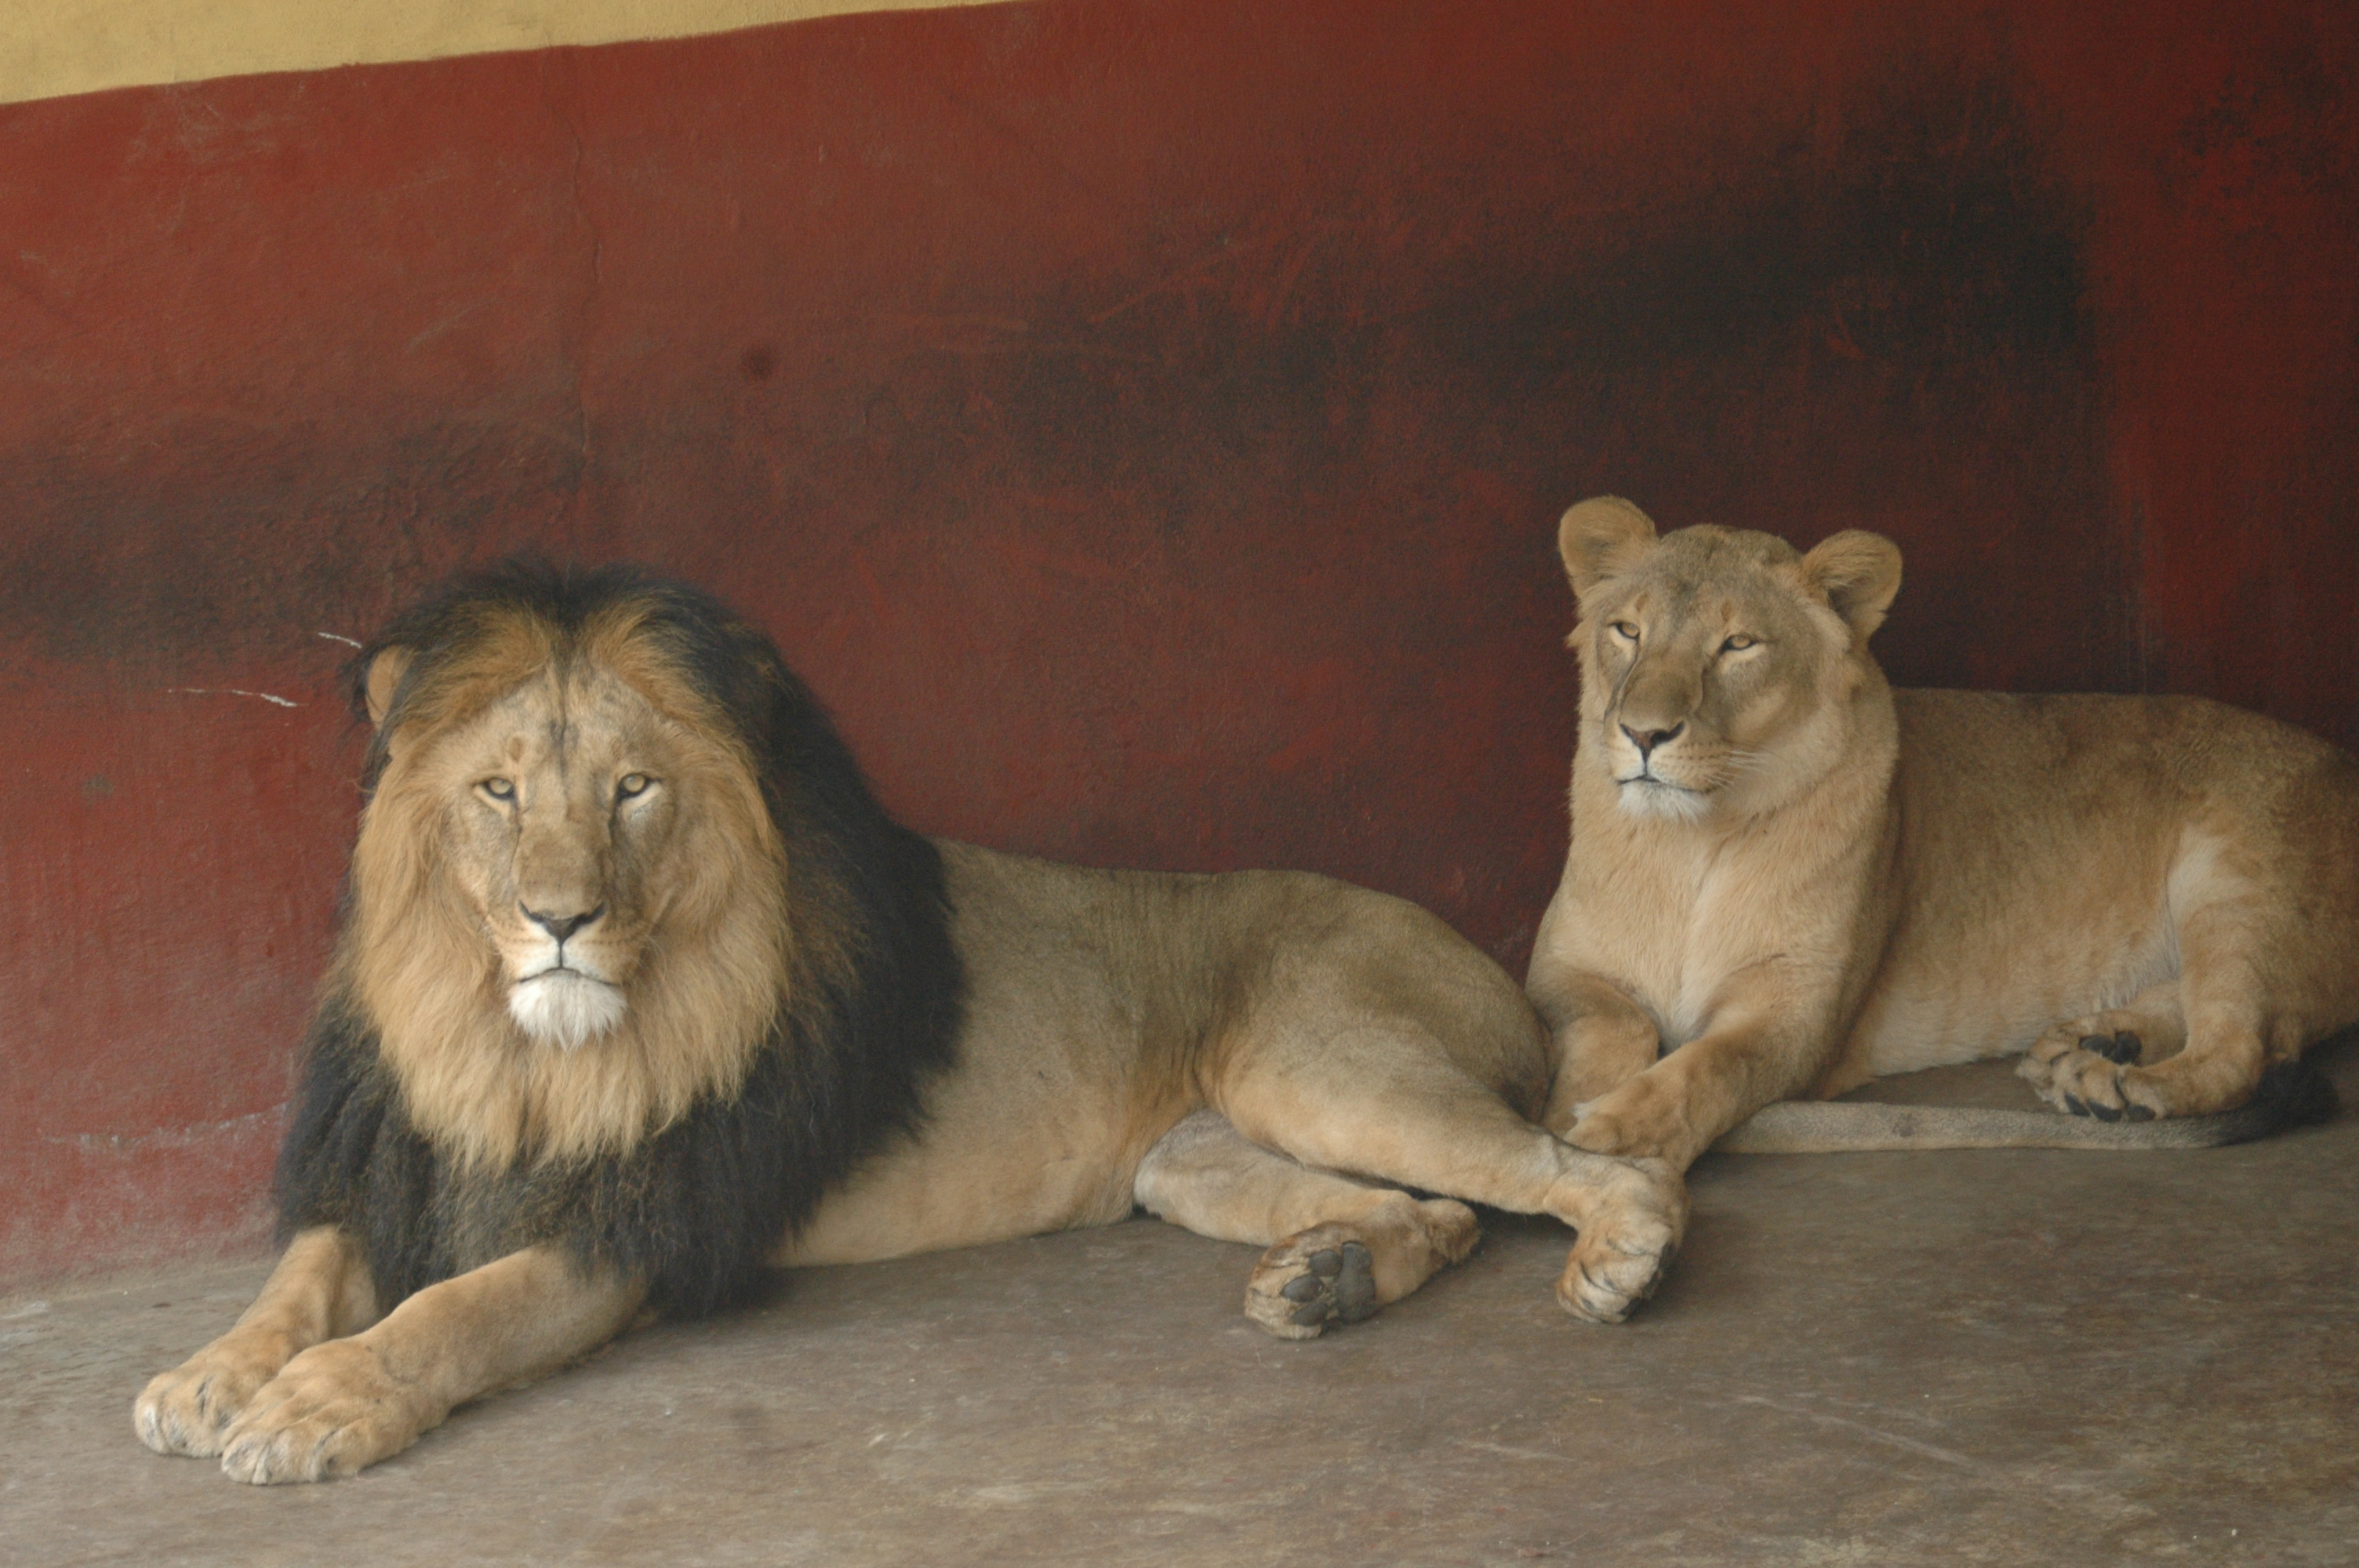 Image: Addis Ababa lion.